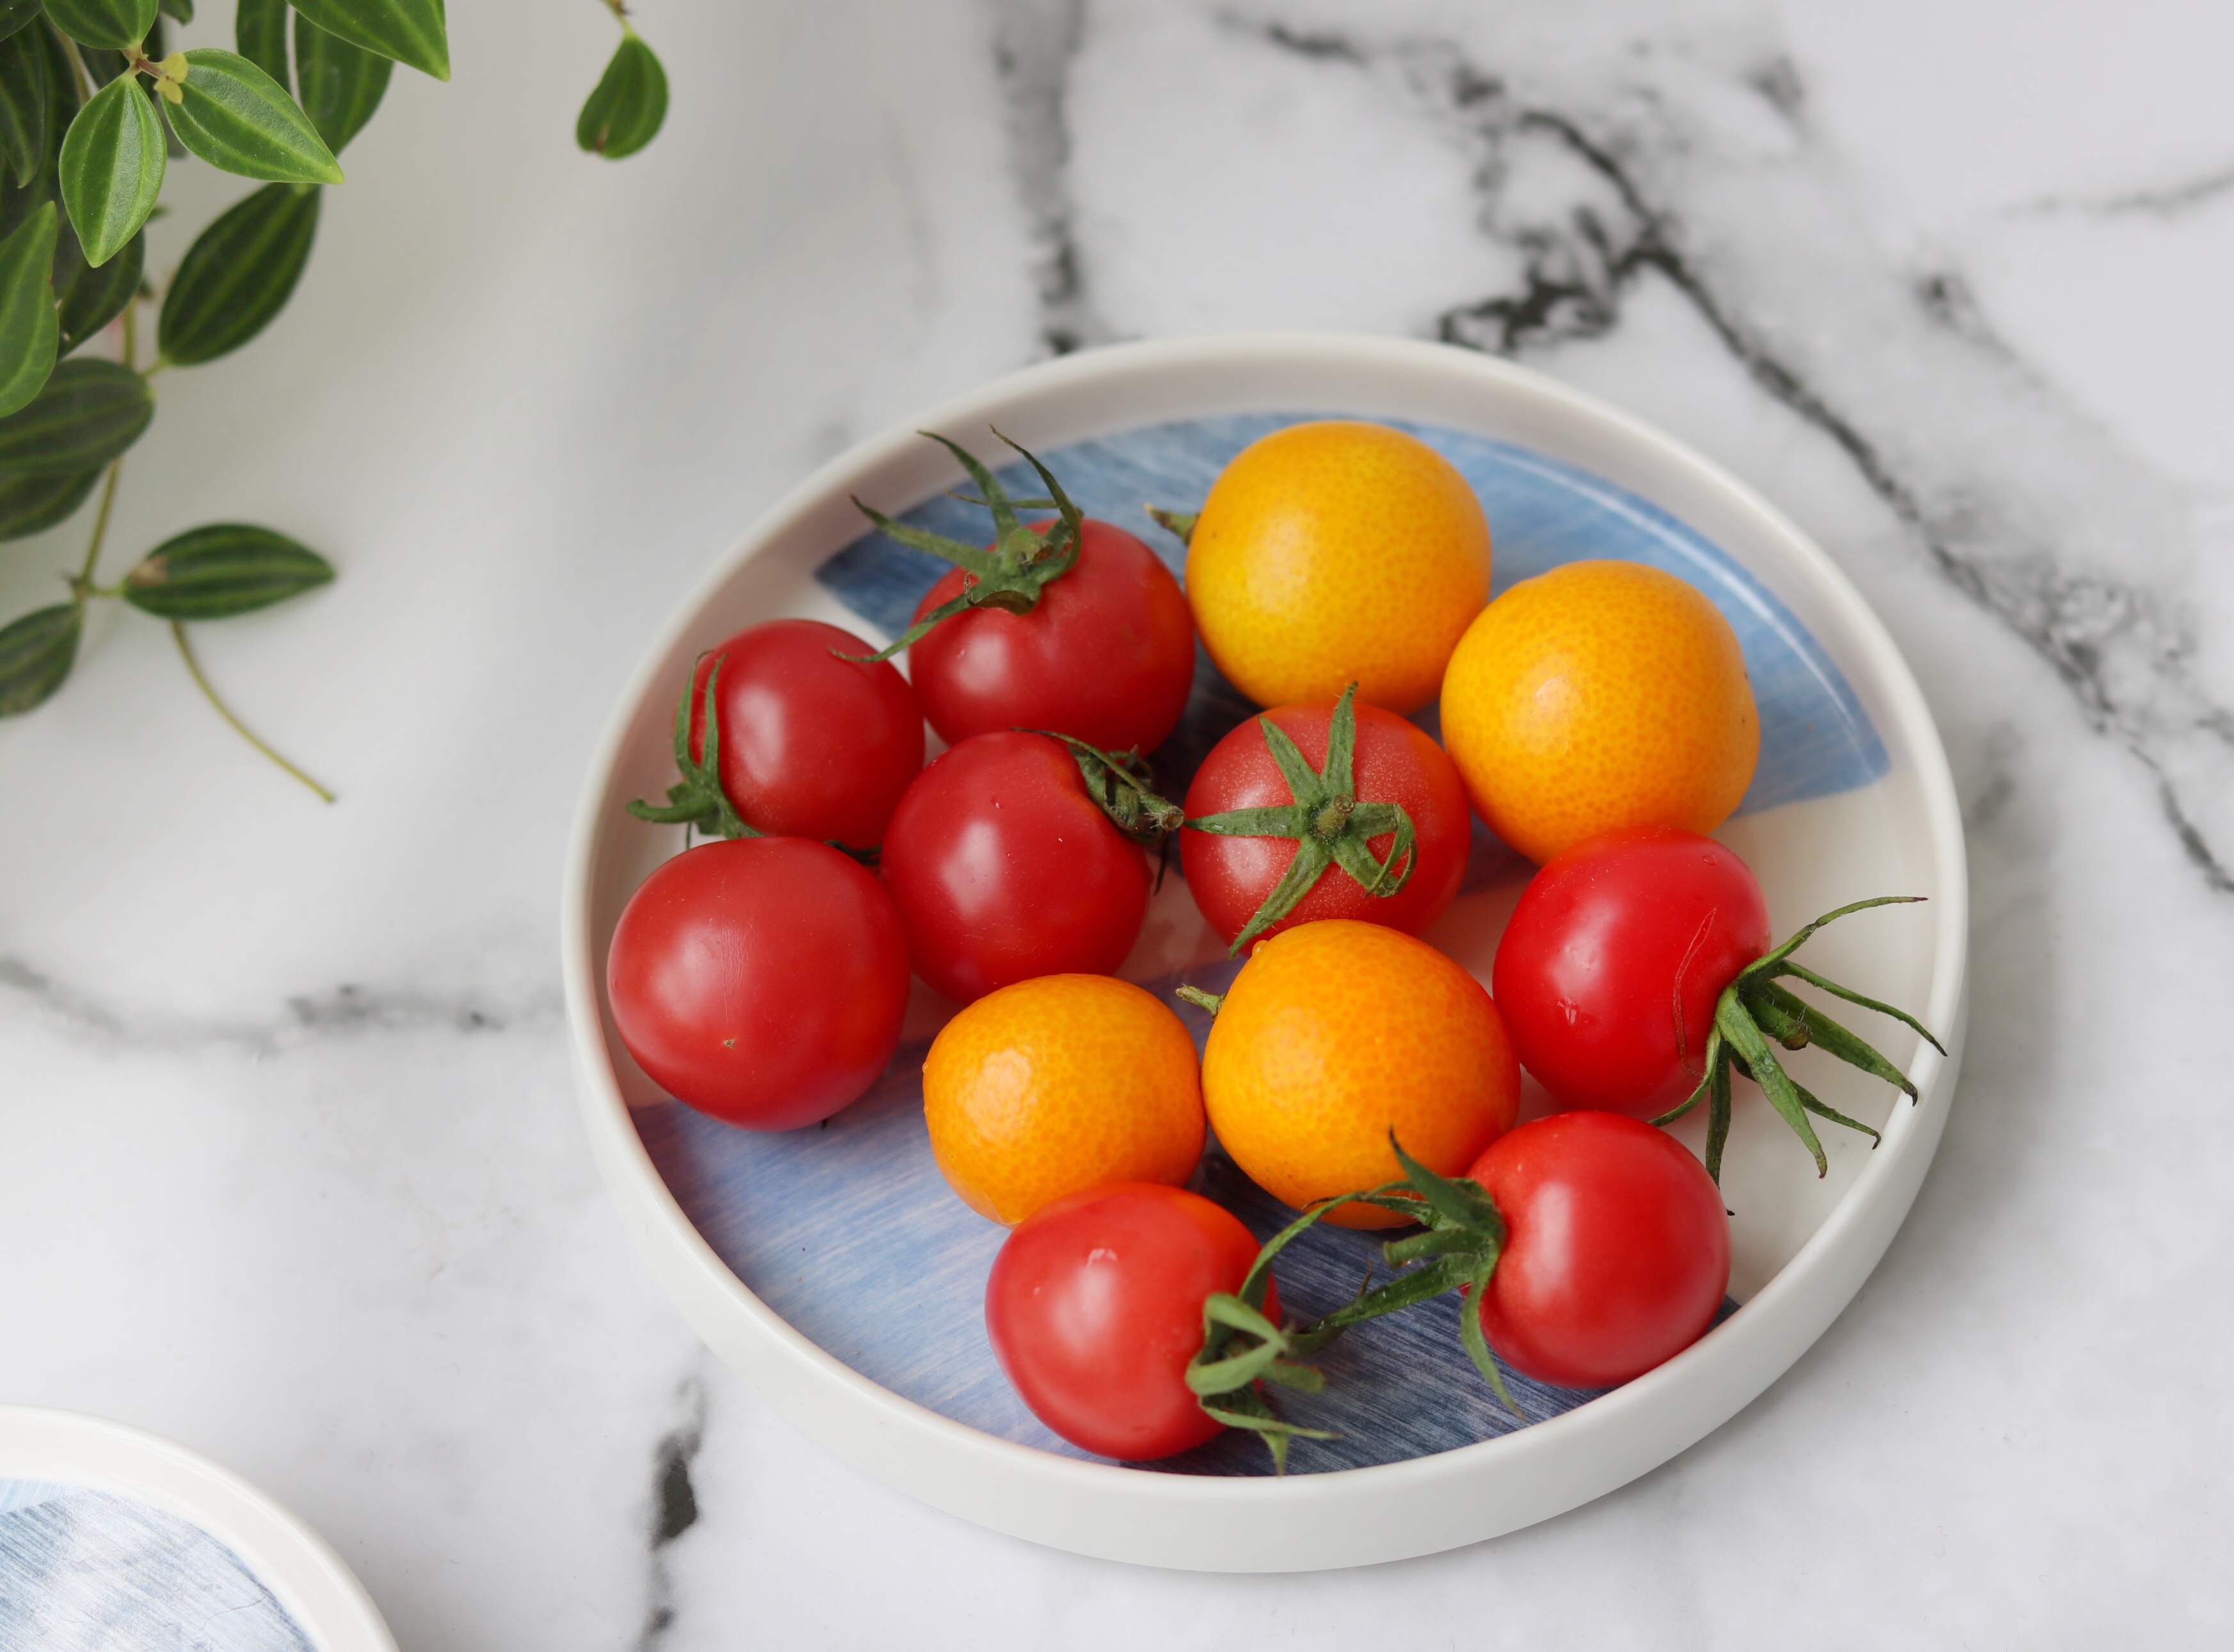 圣女果和金桔,圣女果也叫小西红柿,是水果也是蔬菜,含有多种营养成份